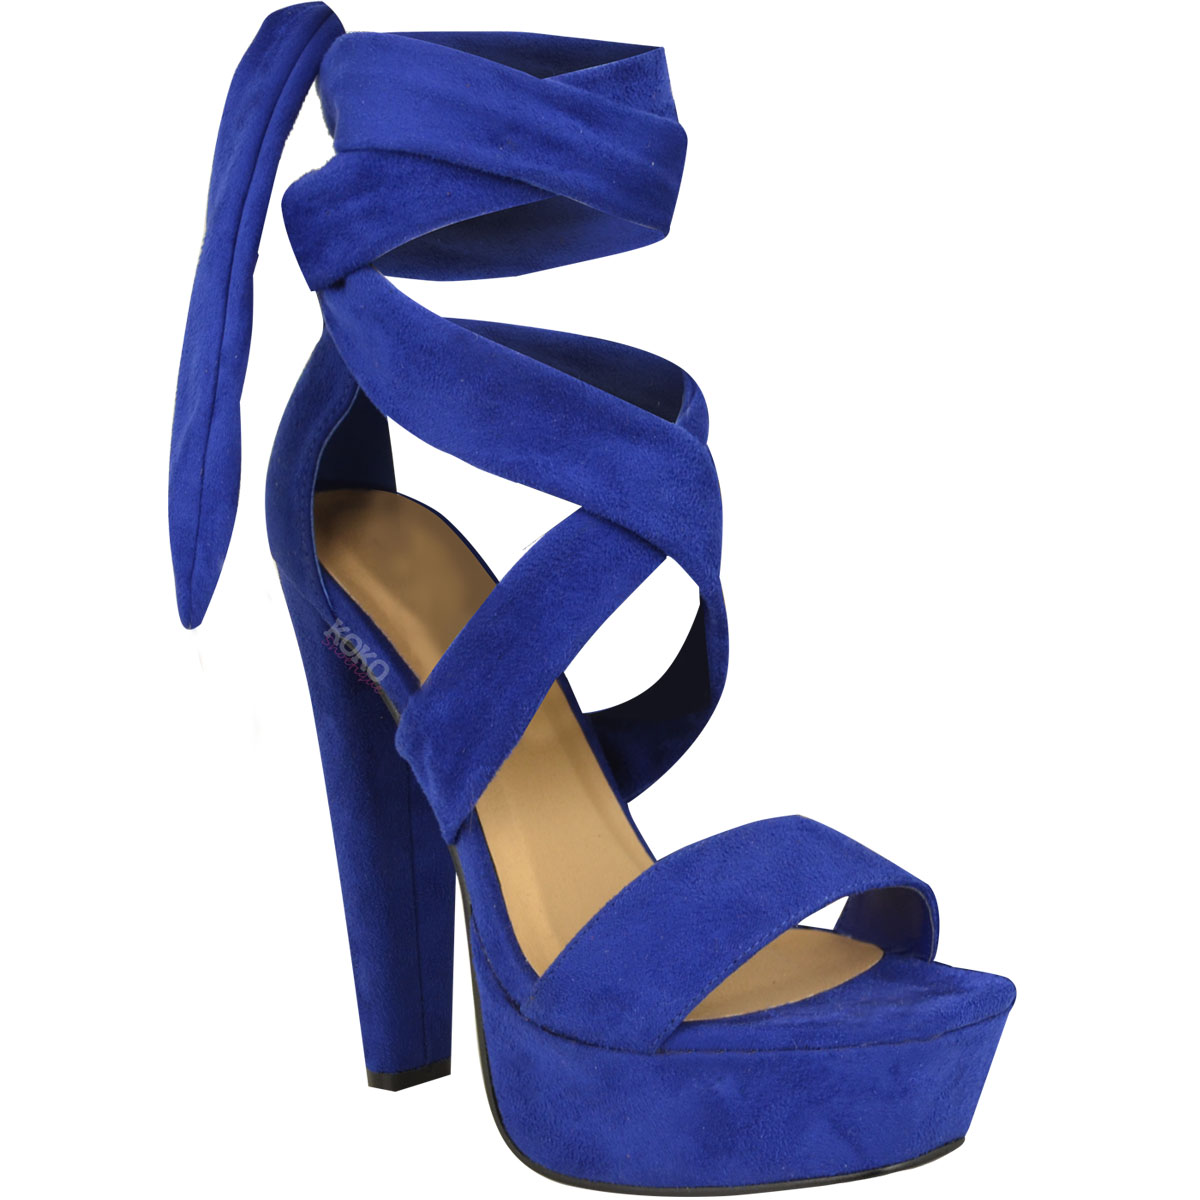 blue lace up sandals